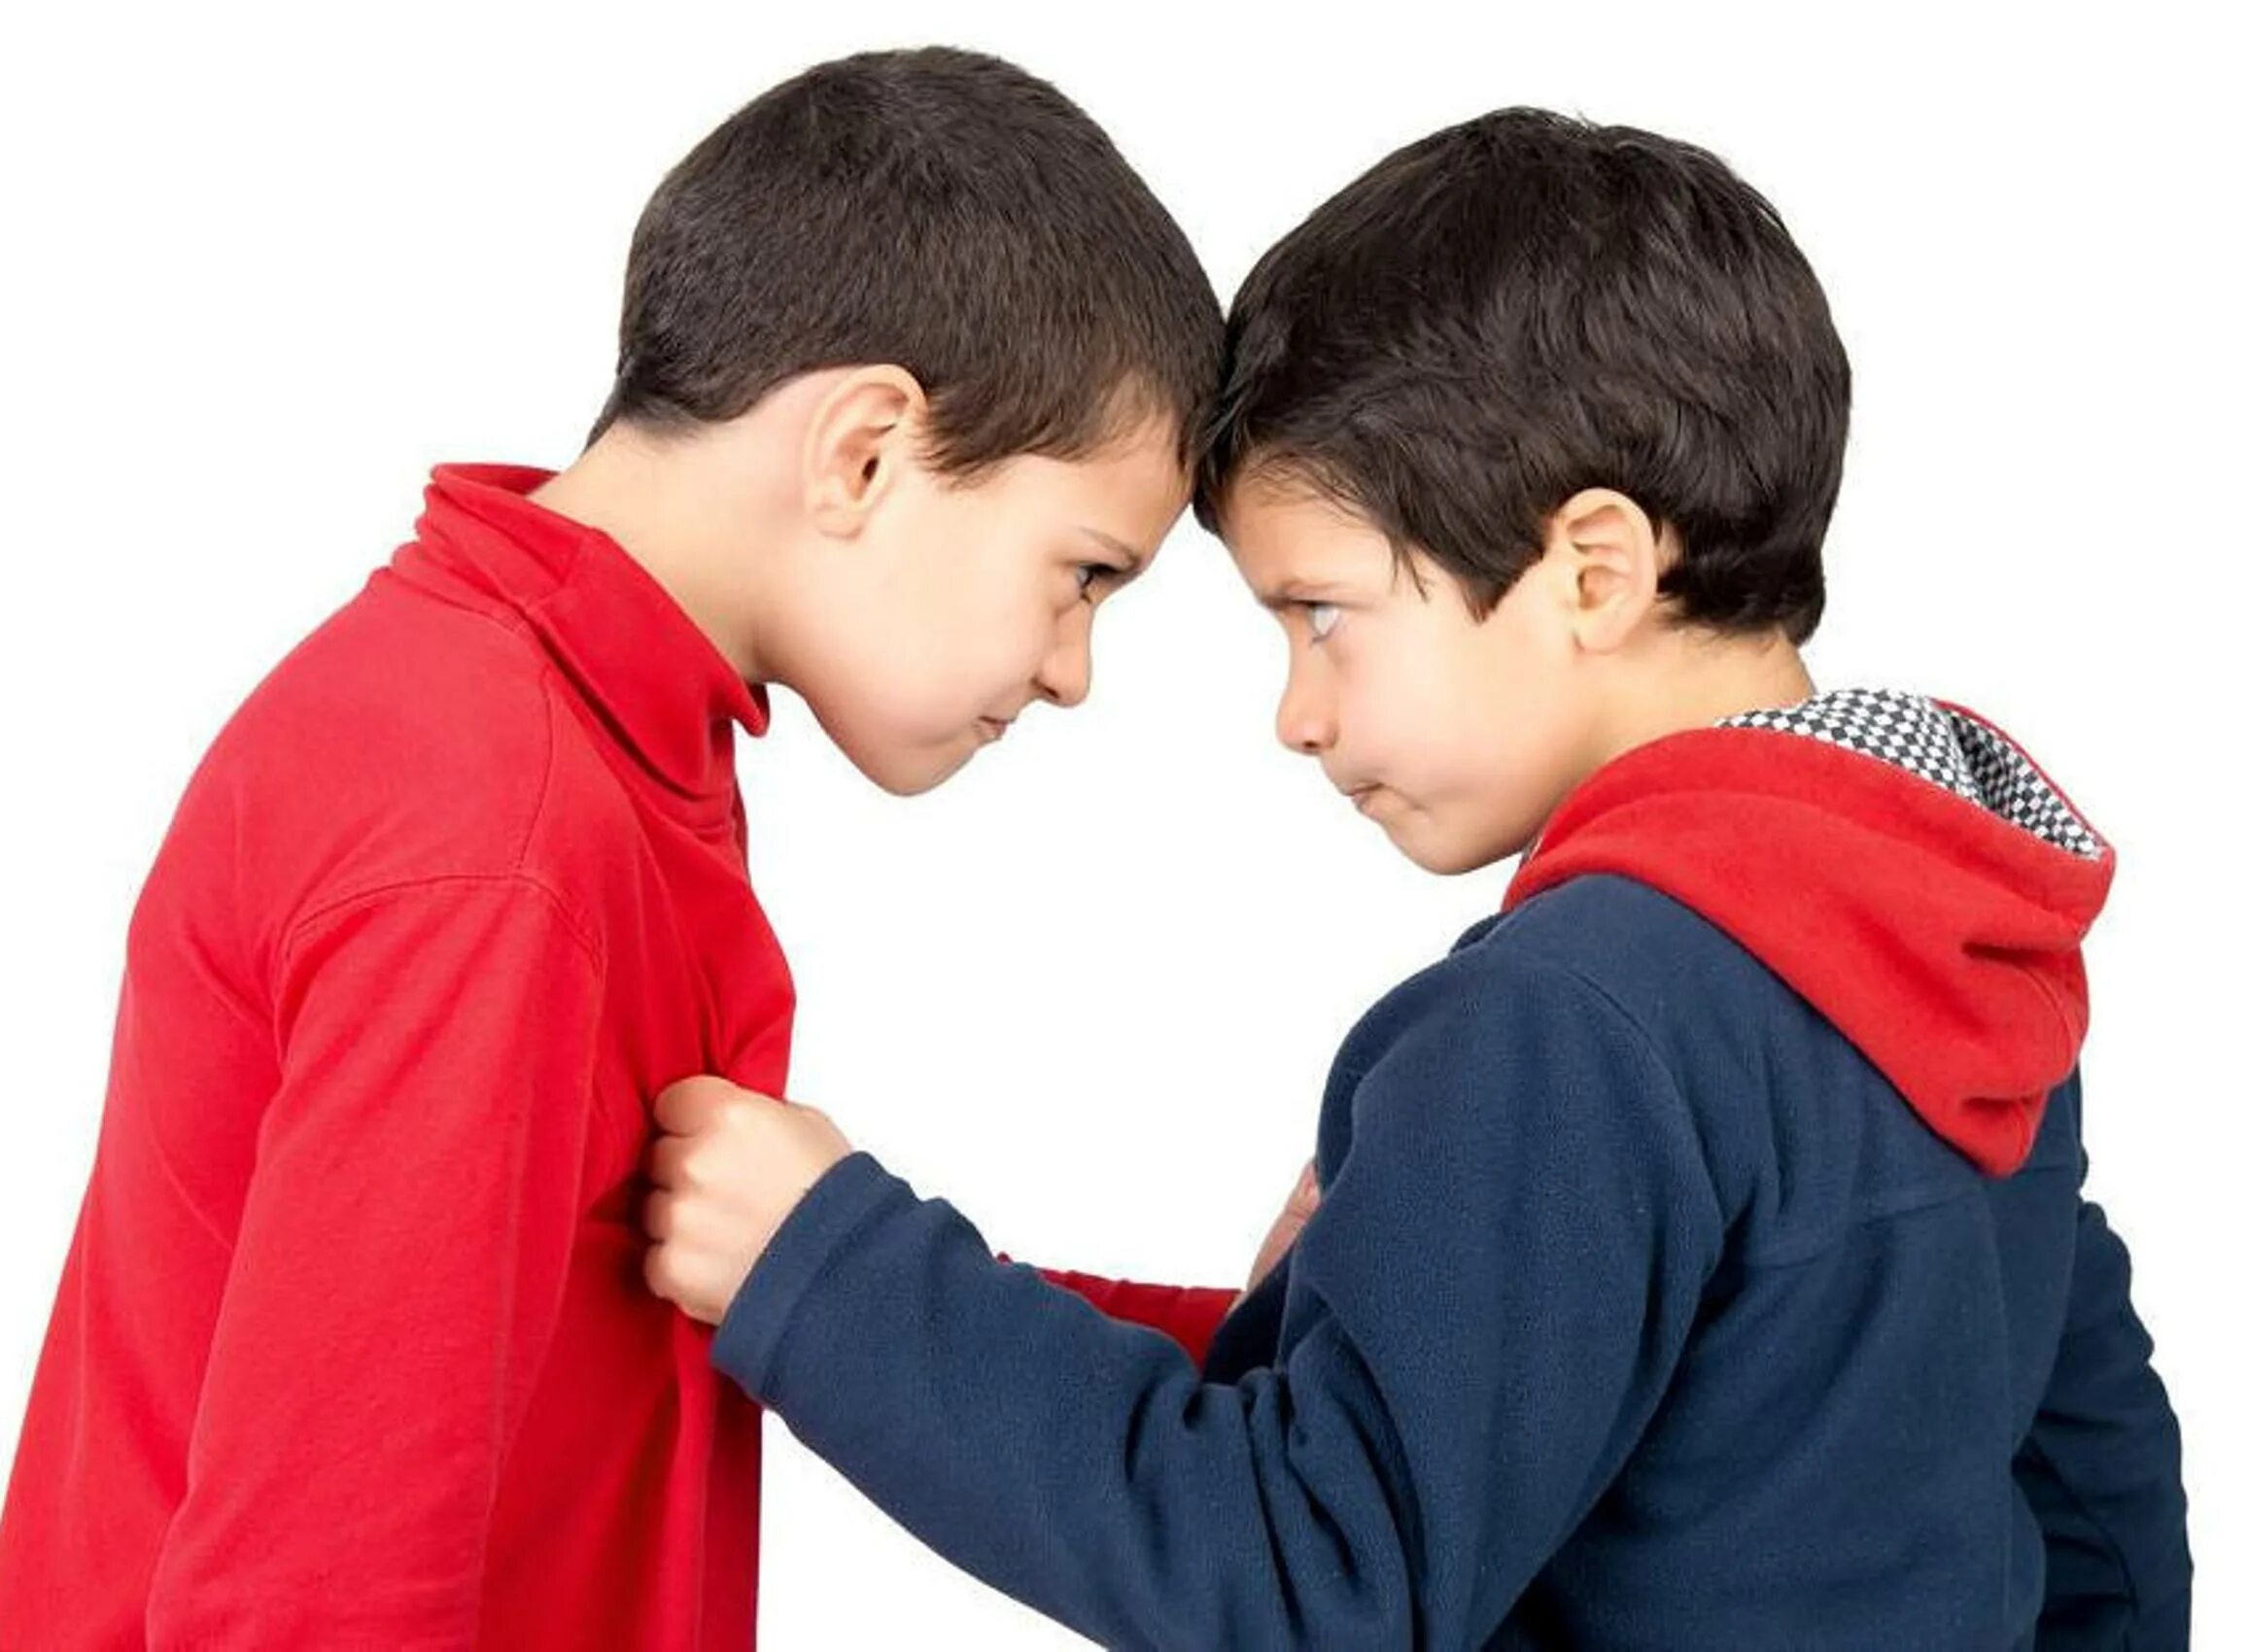 Мальчики ссорятся. Конфликт между детьми. Два мальчика. Конфликтный ребенок. Из двух ссорящихся